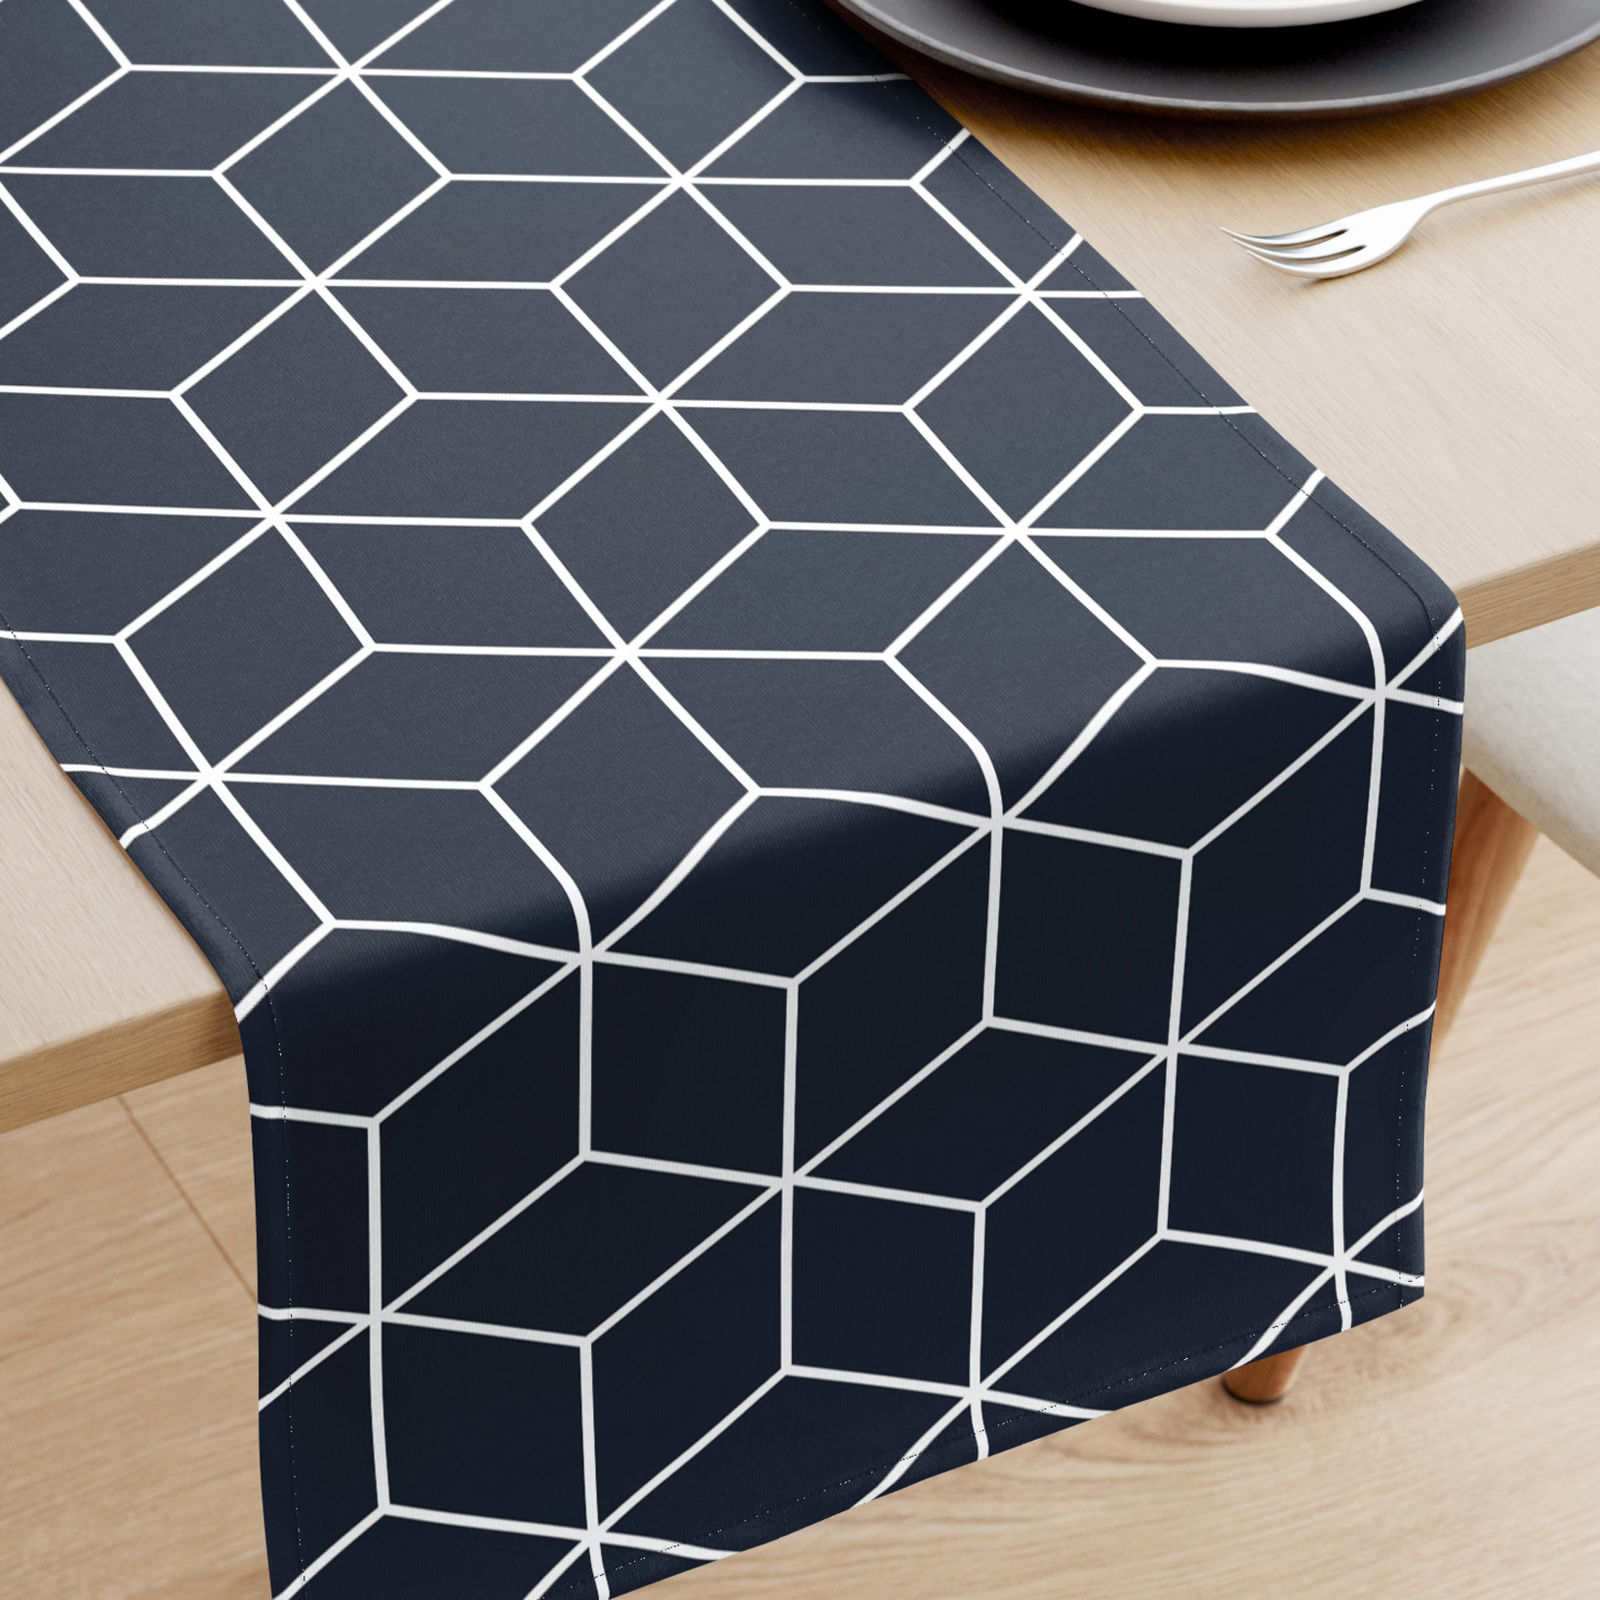 Pamut asztali futó - mozaik mintás, sötétkék alapon